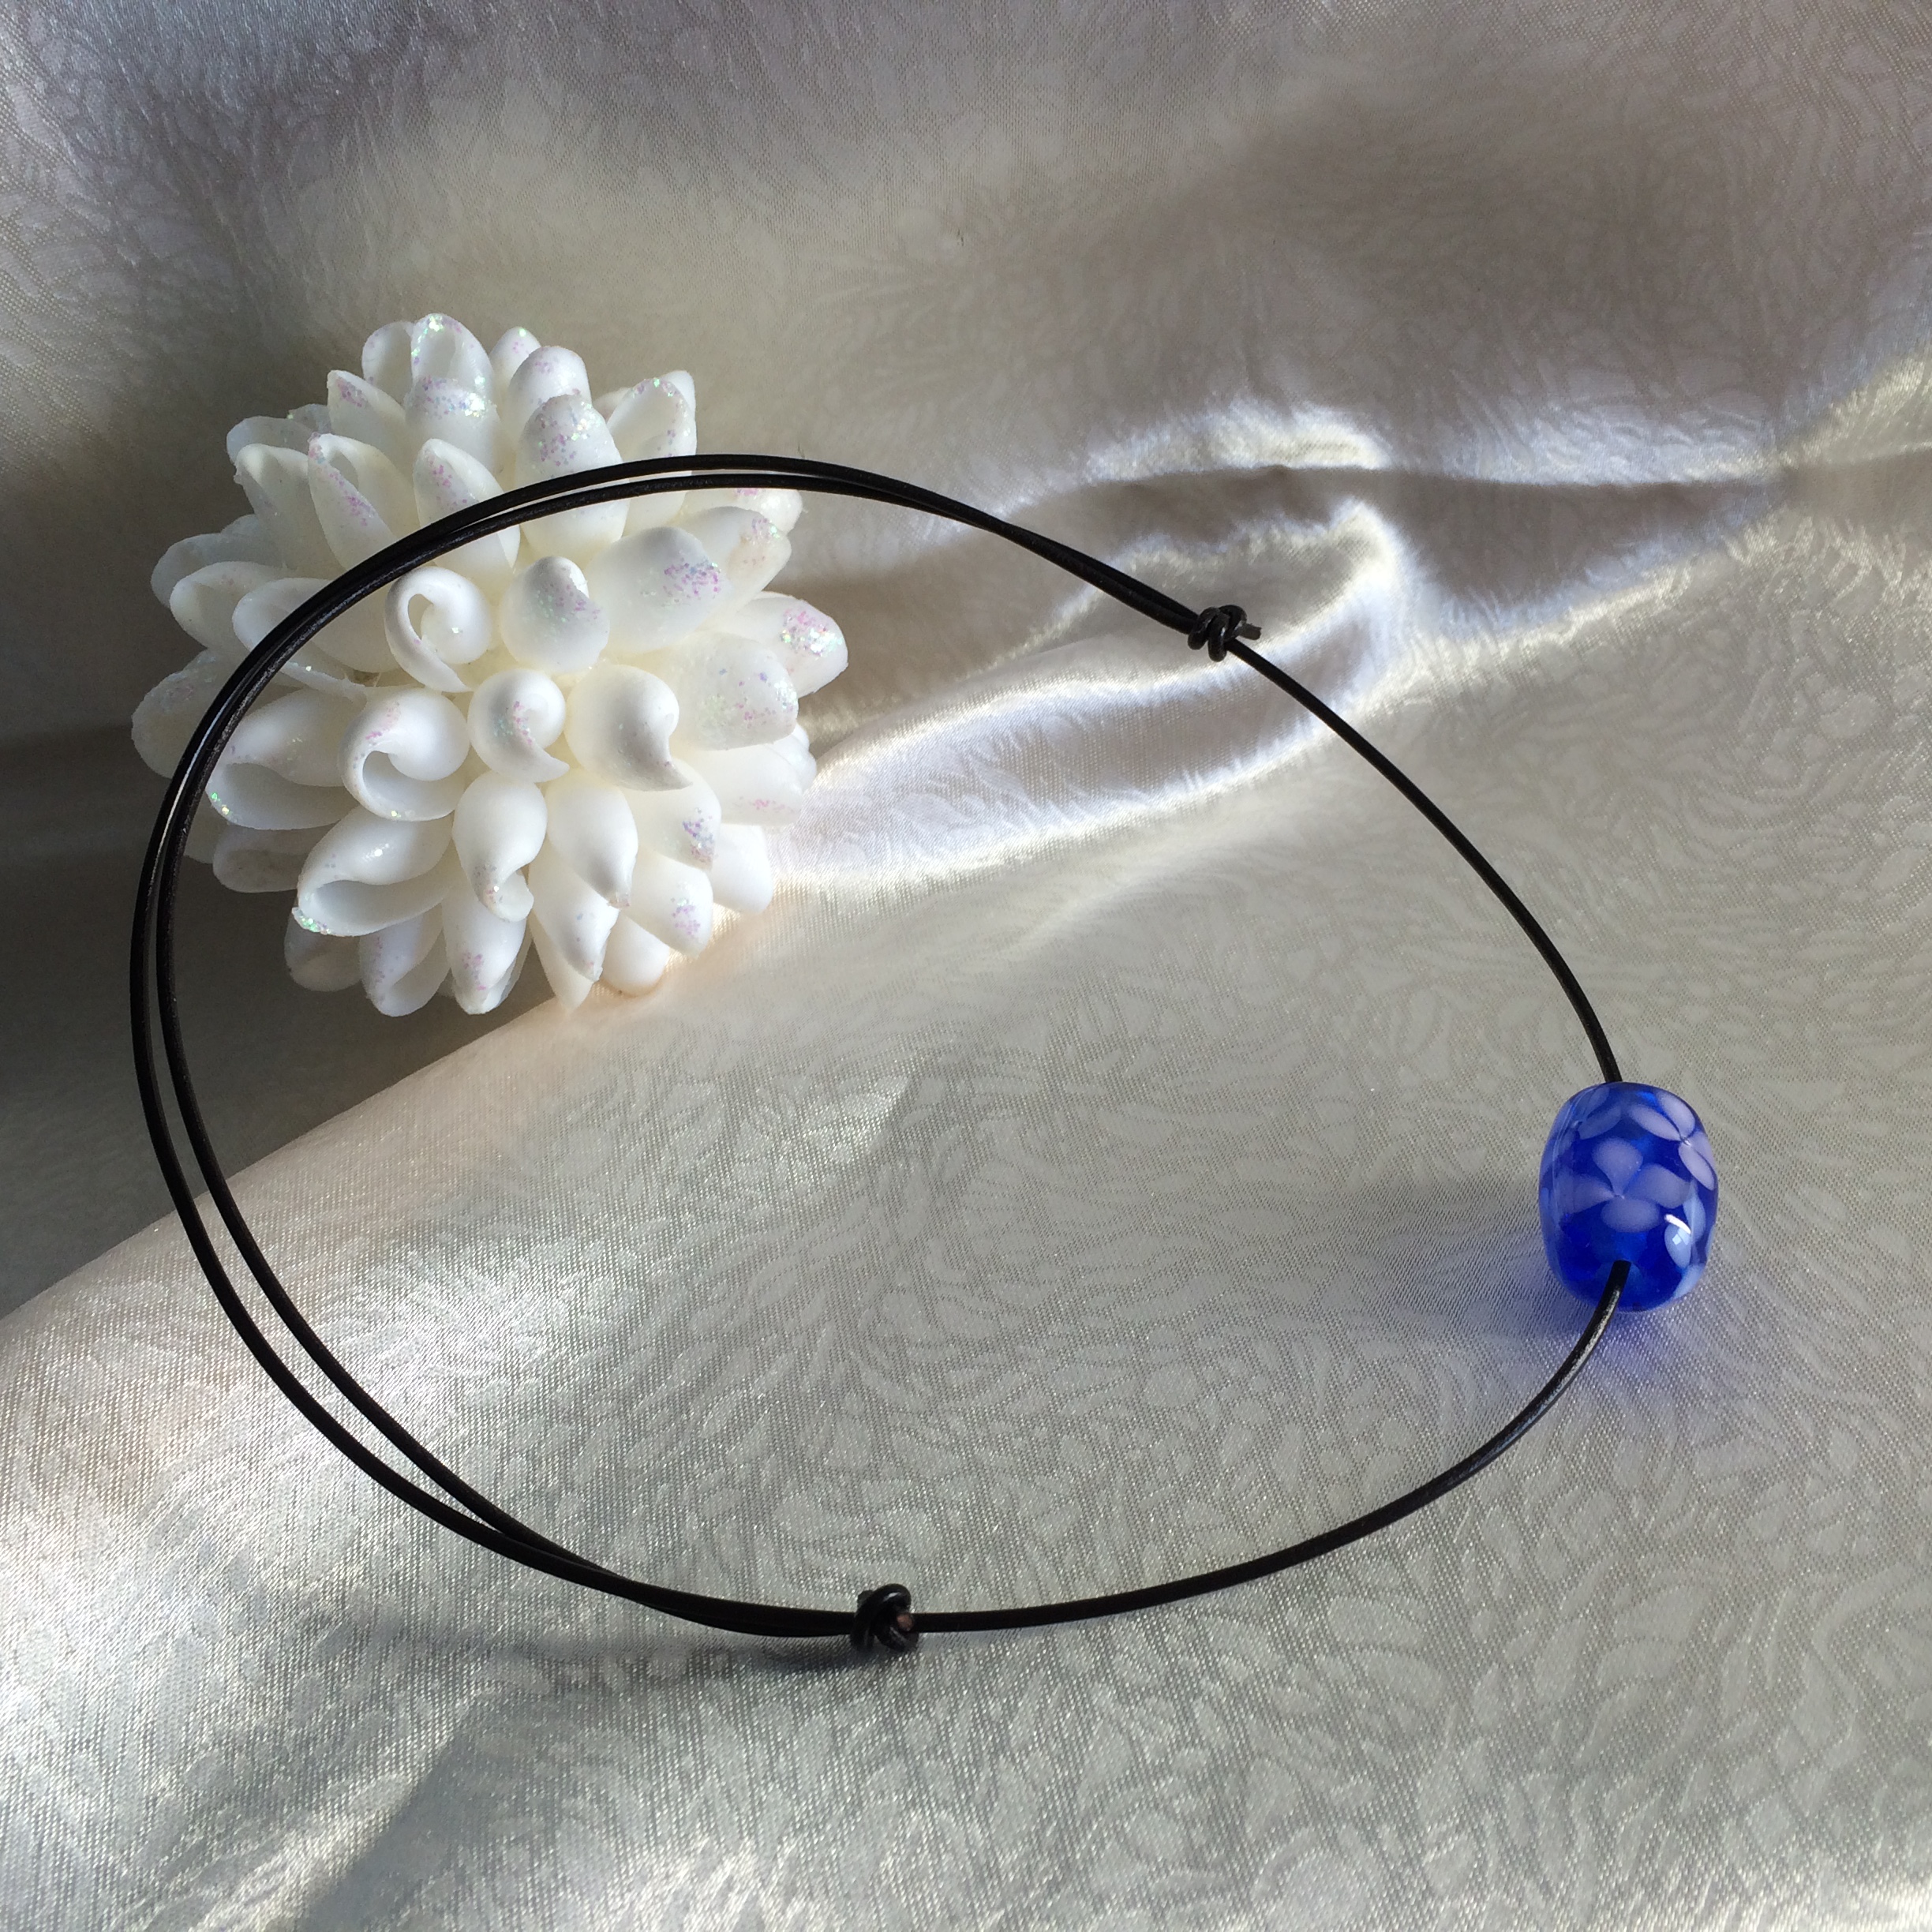 革ひもとトンボ玉のシンプルネックレスを作りました Rikoyu やどかりウェディング 貝殻と革の小物 りこゆ